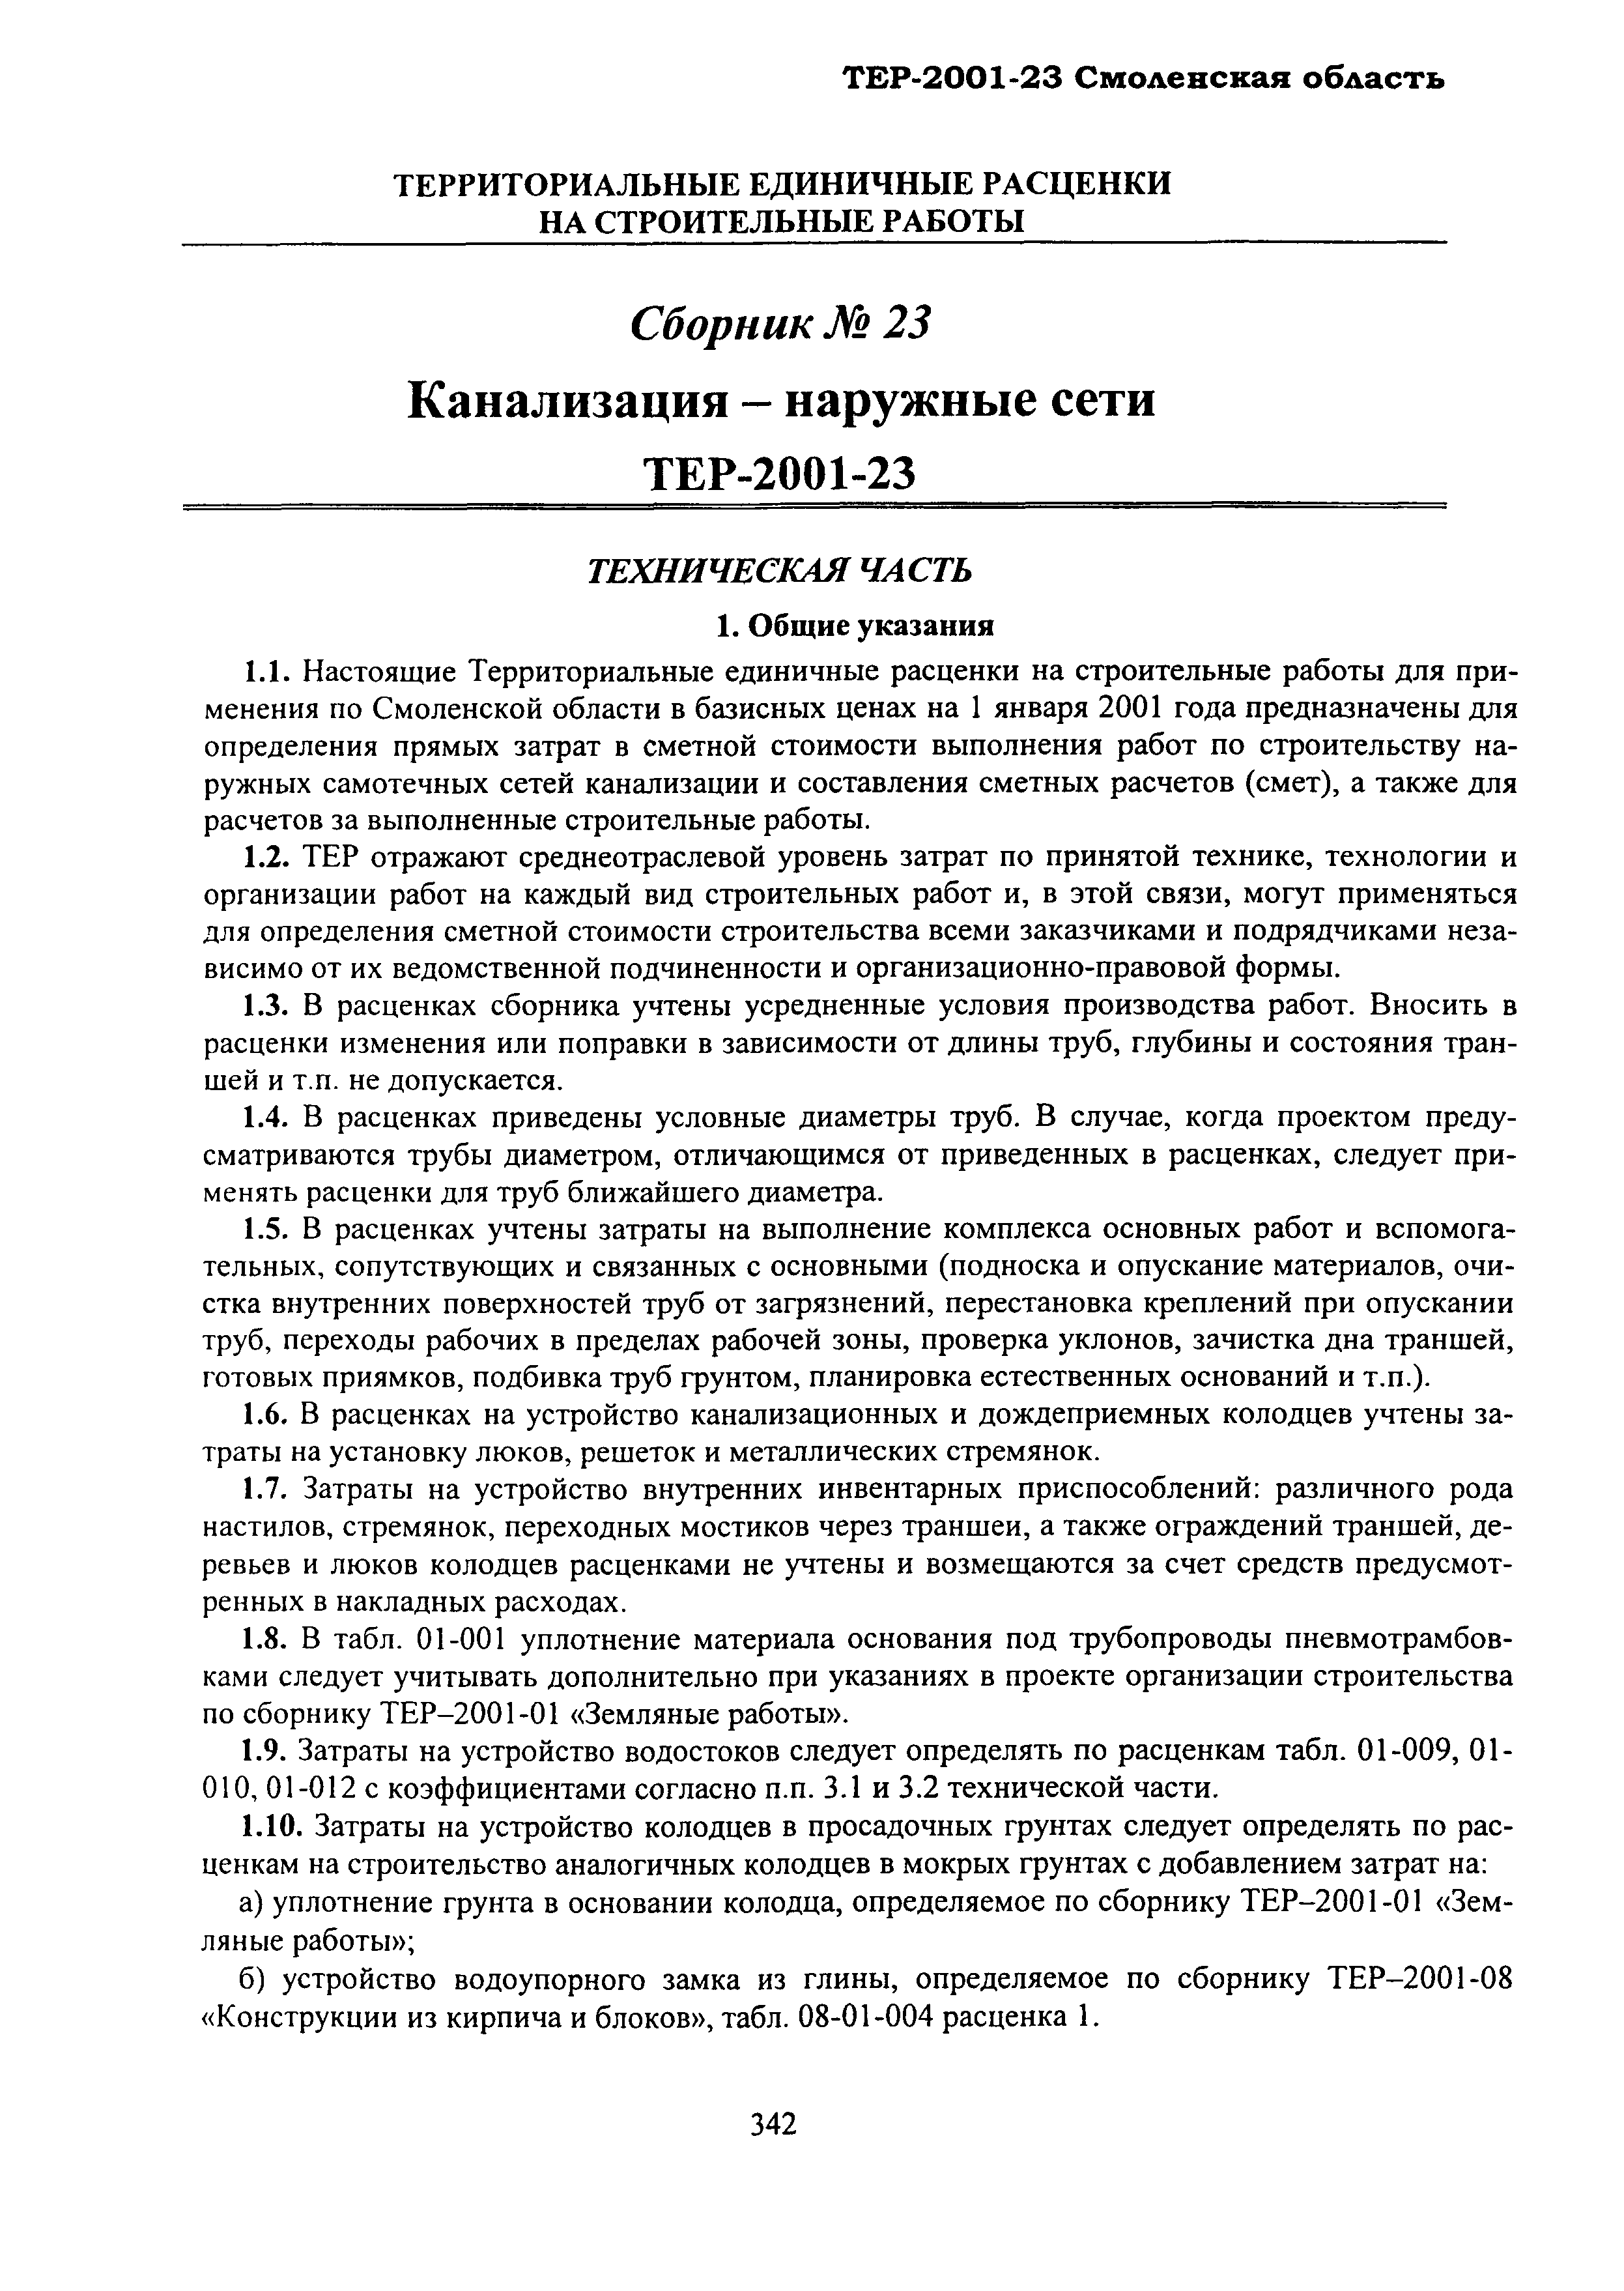 ТЕР Смоленской обл. 2001-23